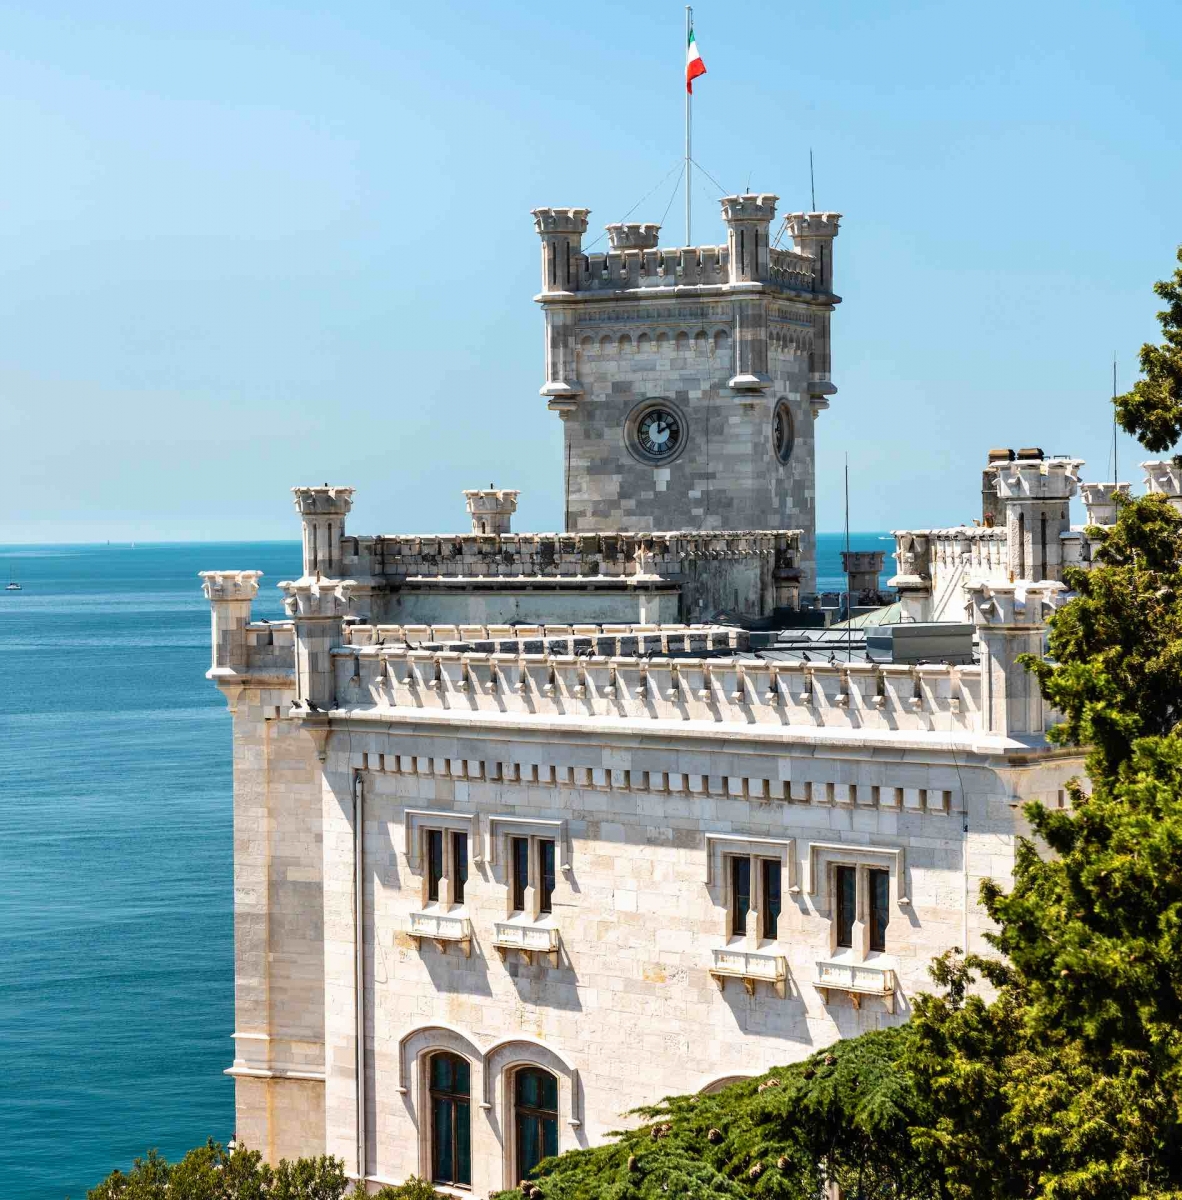 Miramare Castle near Trieste in Italy